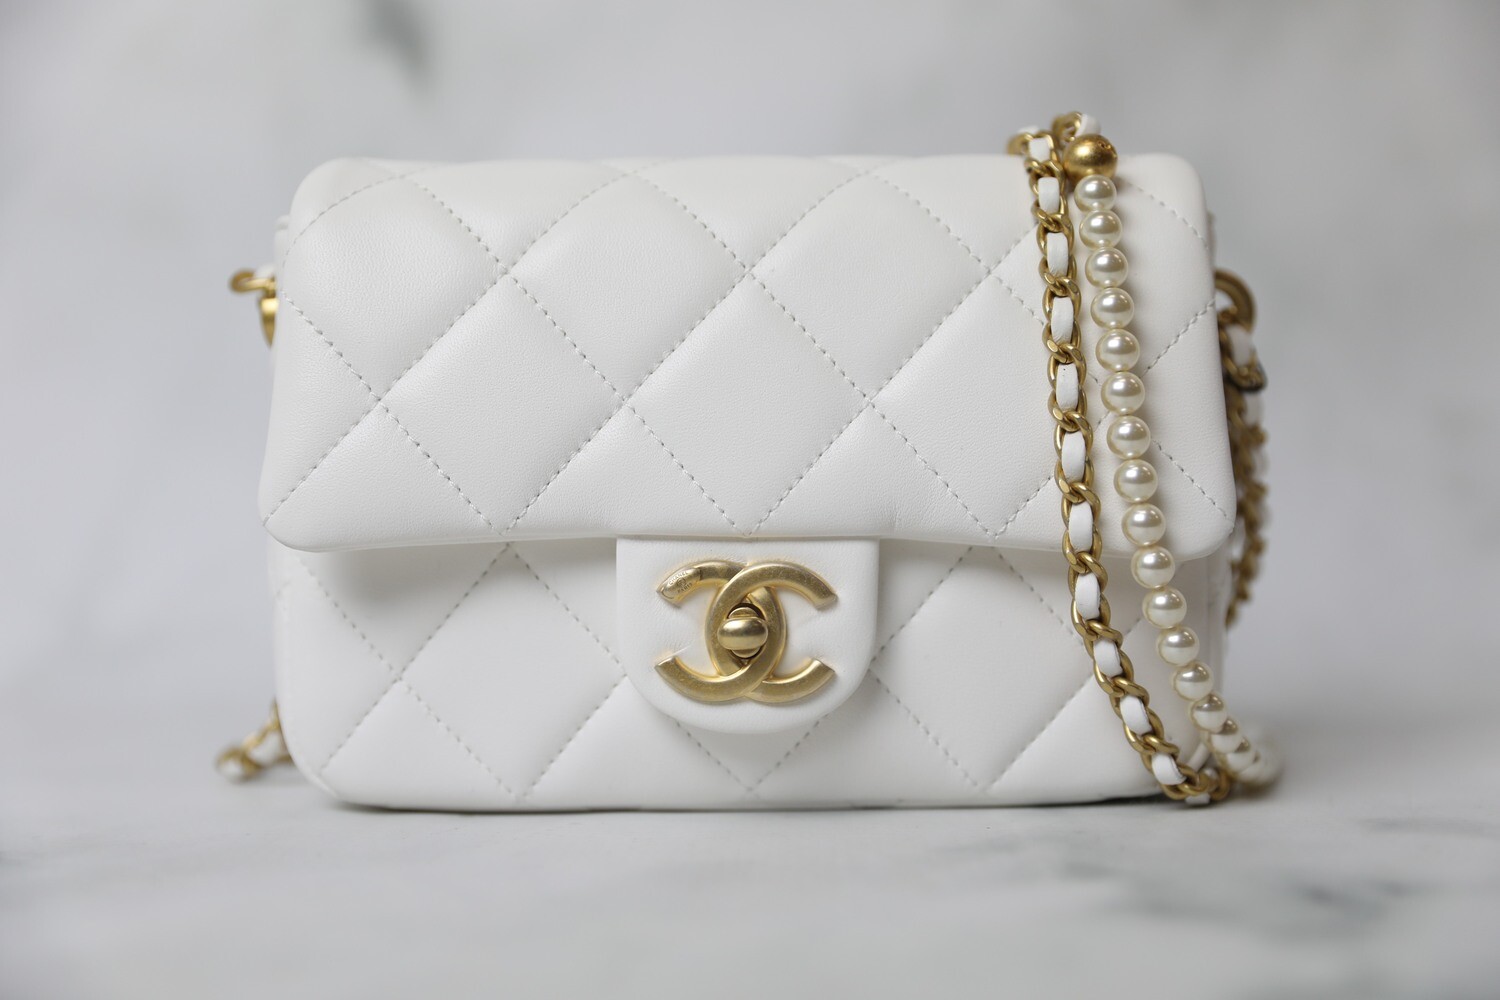 Chanel Classic Flap Medium Bag WIMB - What Fits Inside 